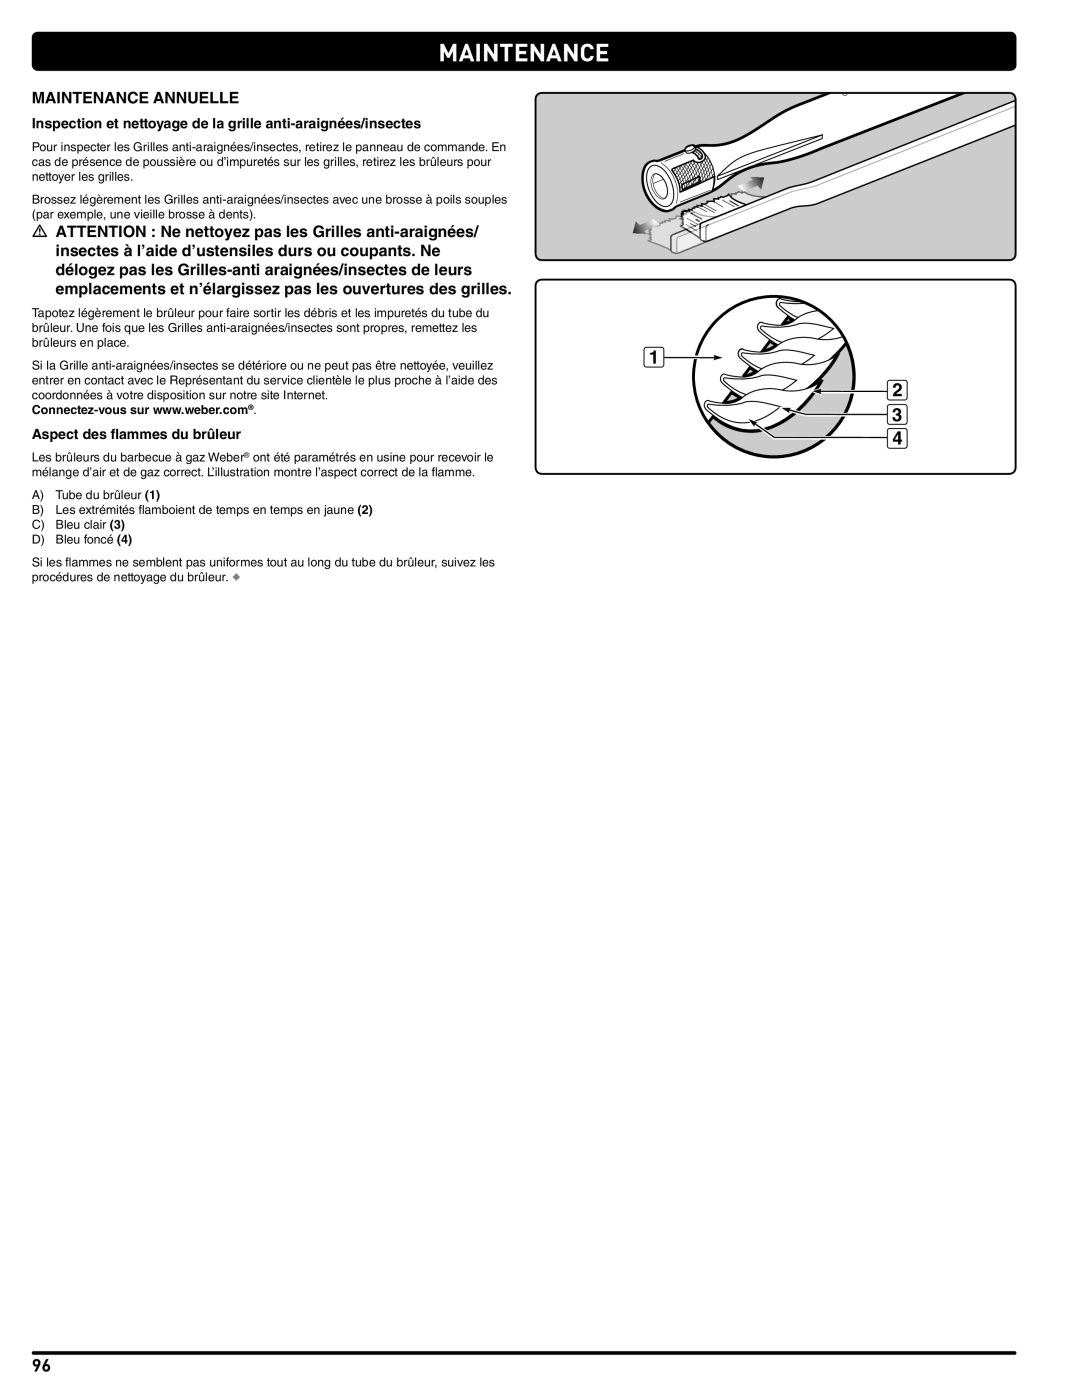 Weber Summit Gas Grill, 56576 manual Maintenance Annuelle, Inspection et nettoyage de la grille anti-araignées/insectes 